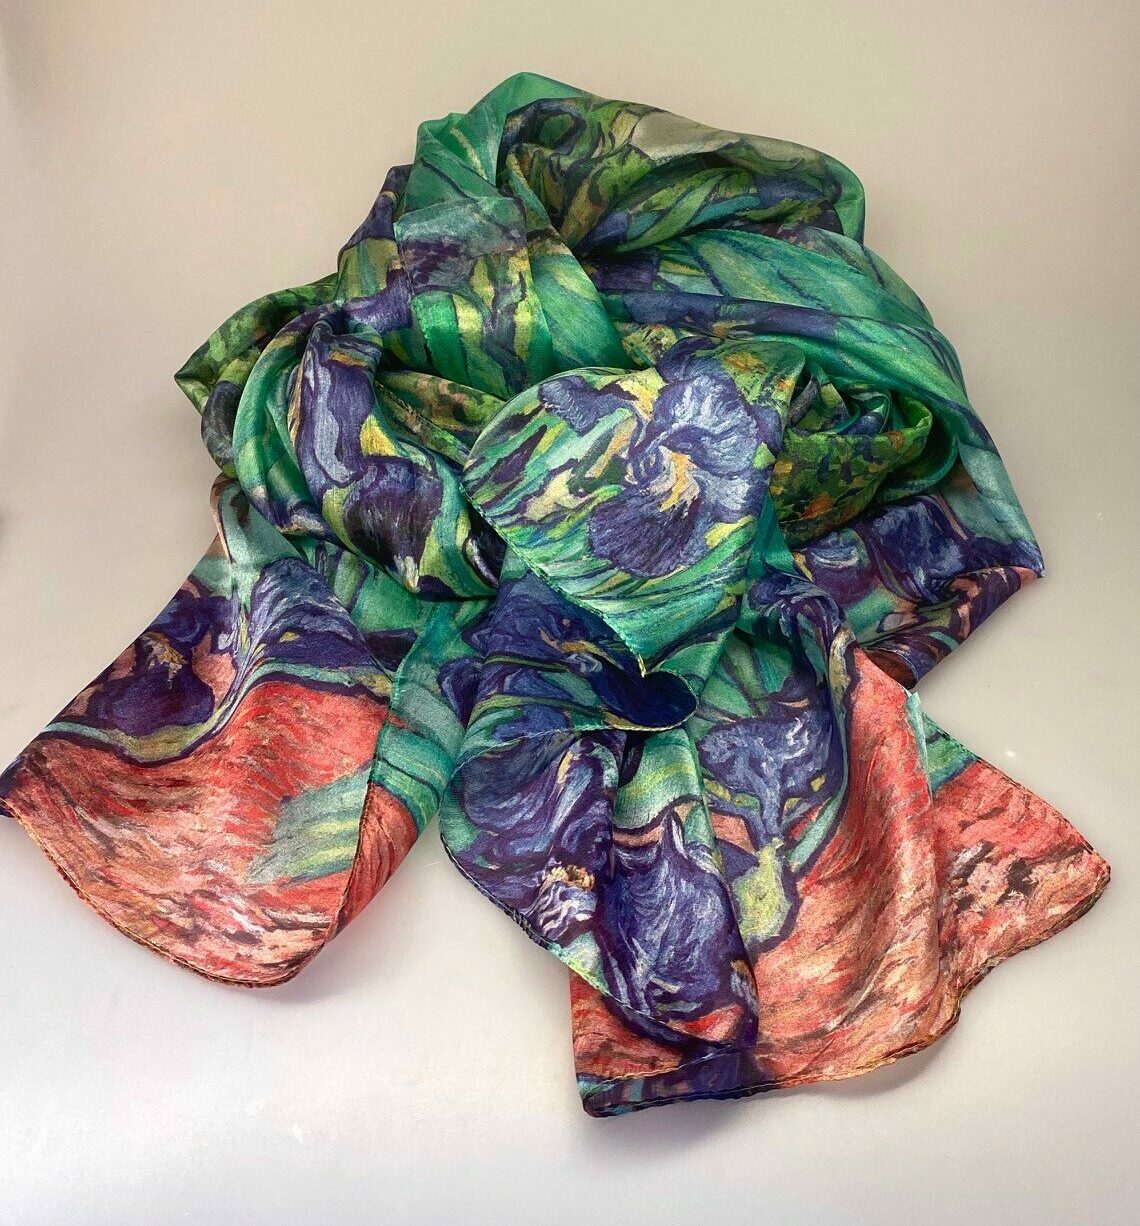 Silketørklæde Satin XL - Van Gogh Iris, kunst, kunstmotiv, maleri, vincent van gogh, iris, blå, grøn, stort, flot, kvalitet, lækkert, smukt, festligt, stola, satin, blank, ren, silke, silketørklæde, gave, gaveide, elegant, langt,